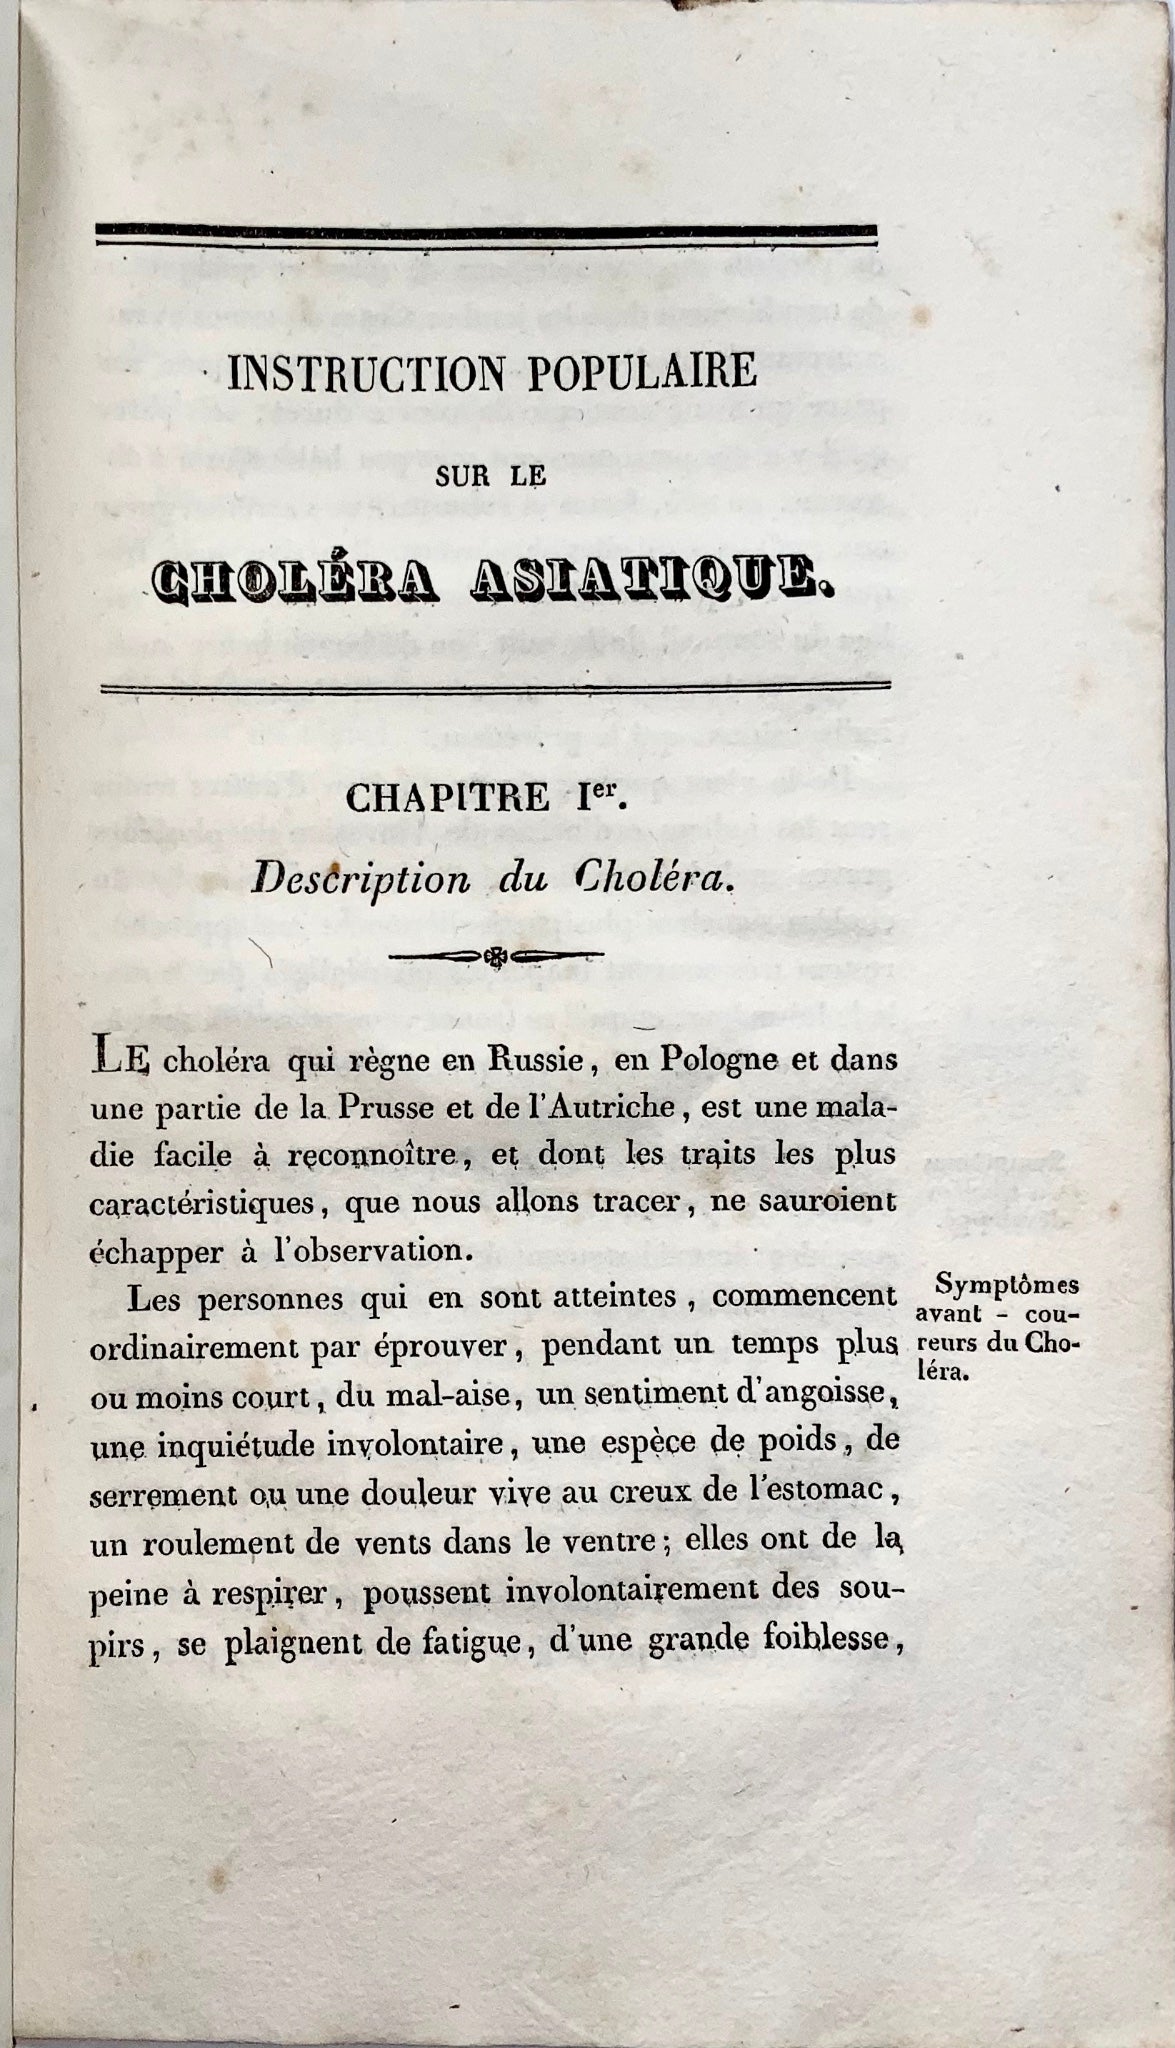 1831 Santé publique, brochure rare sur la deuxième grande pandémie de choléra, Suisse